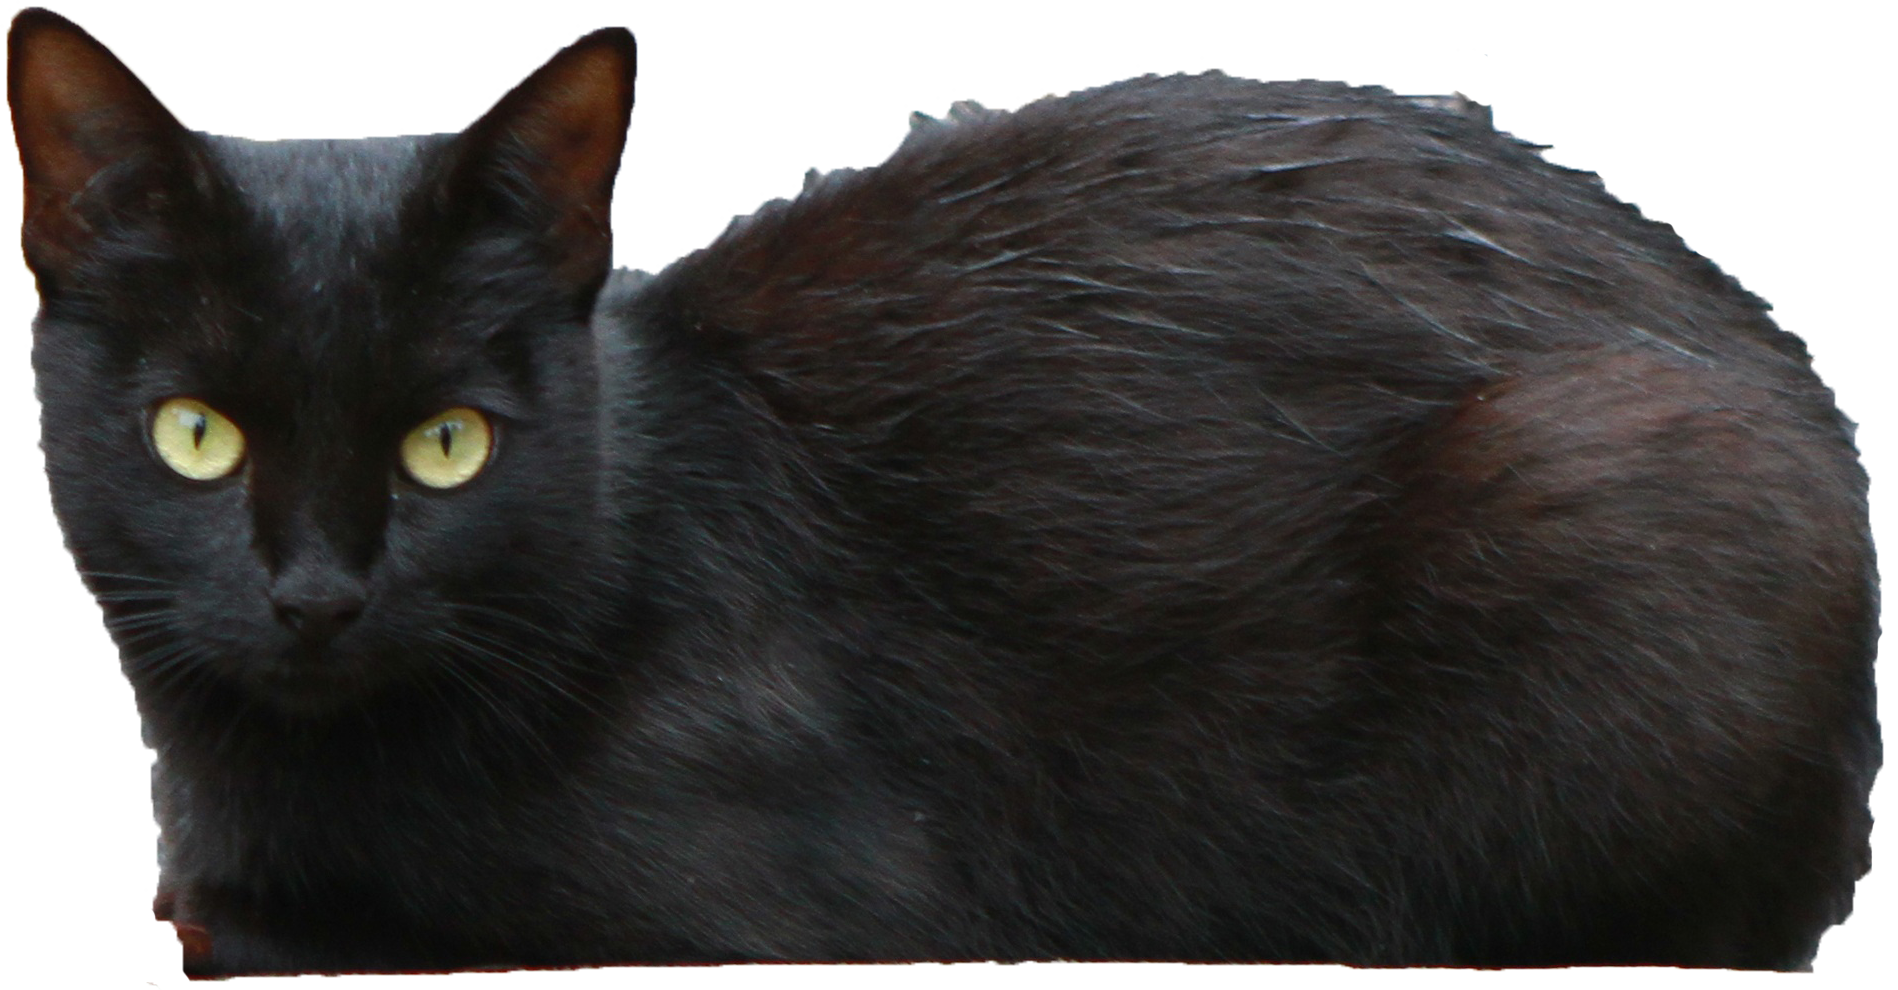 black cat transparent